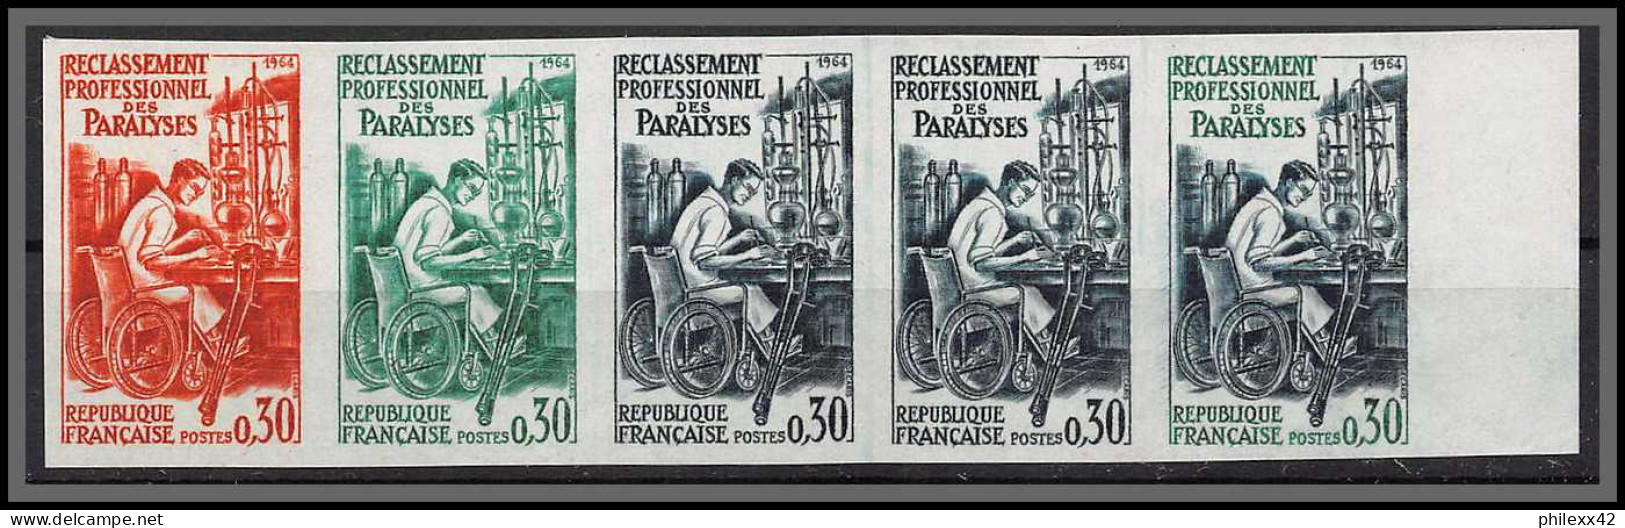 France N°1405 Paralysés Paralyzed Handicap Handicapes 1964 Dande 5 Trial Color Proof Non Dentelé Imperf ** MNH - 1961-1970